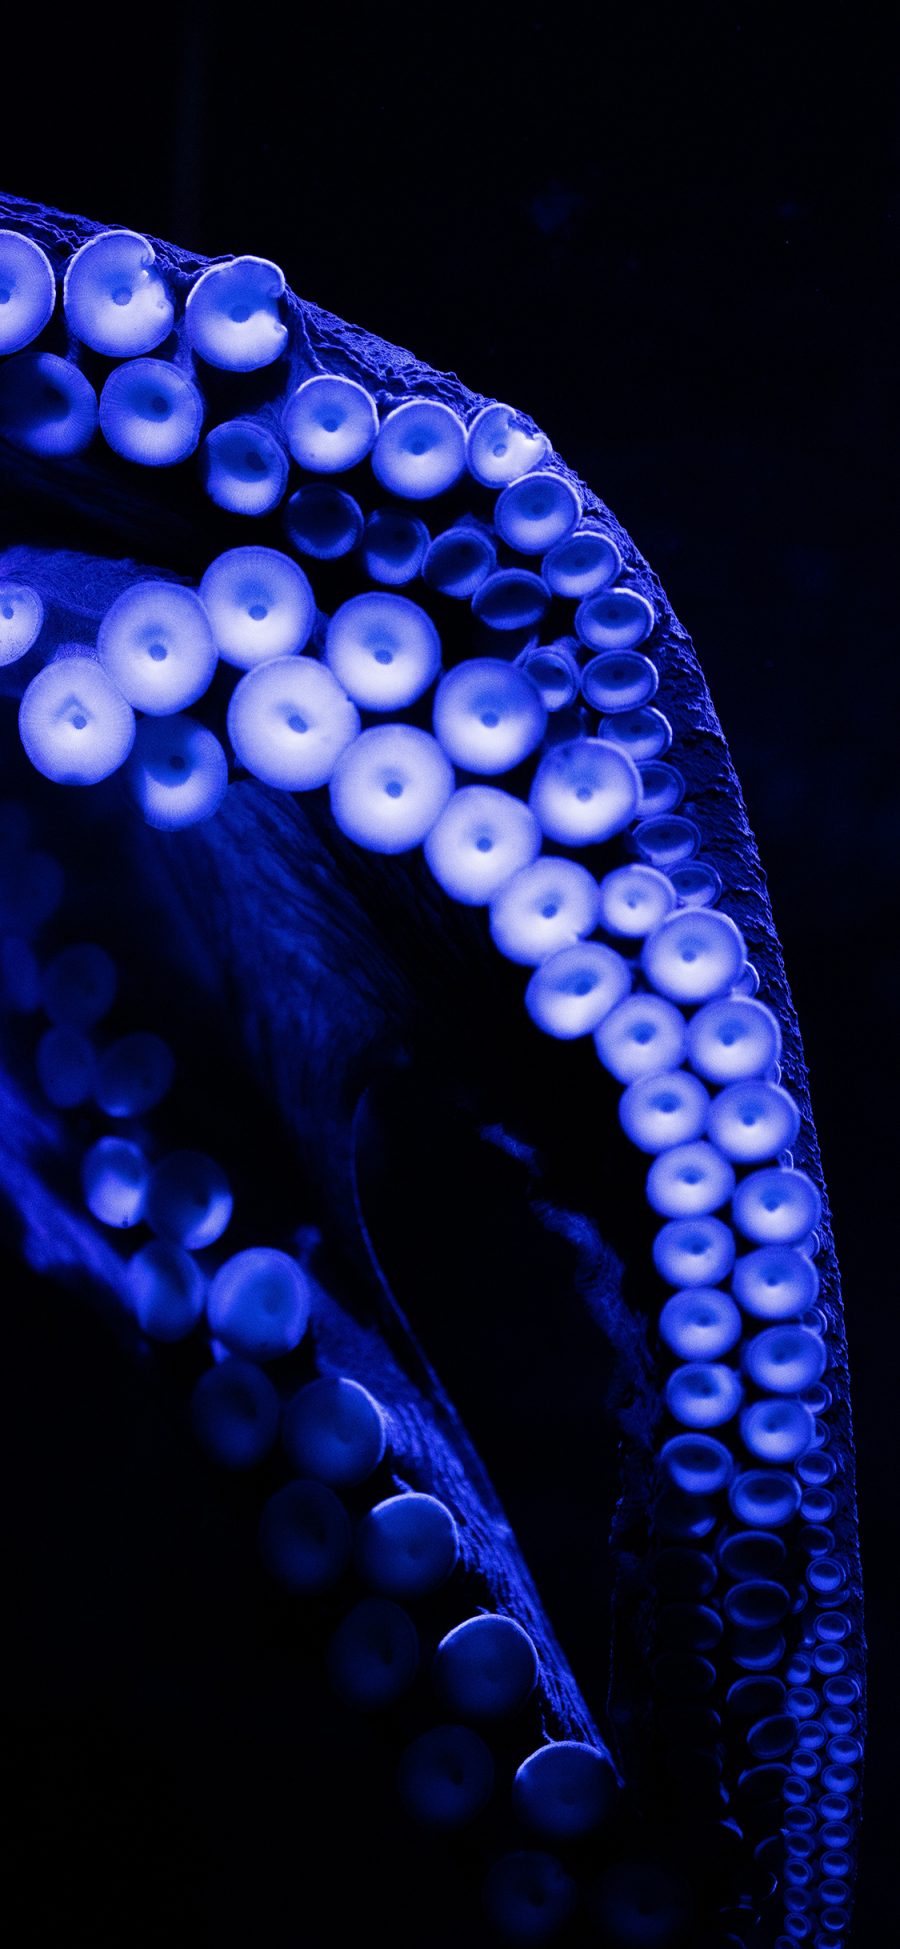 [2436×1125]海洋生物 章鱼 触脚 吸盘 苹果手机壁纸图片